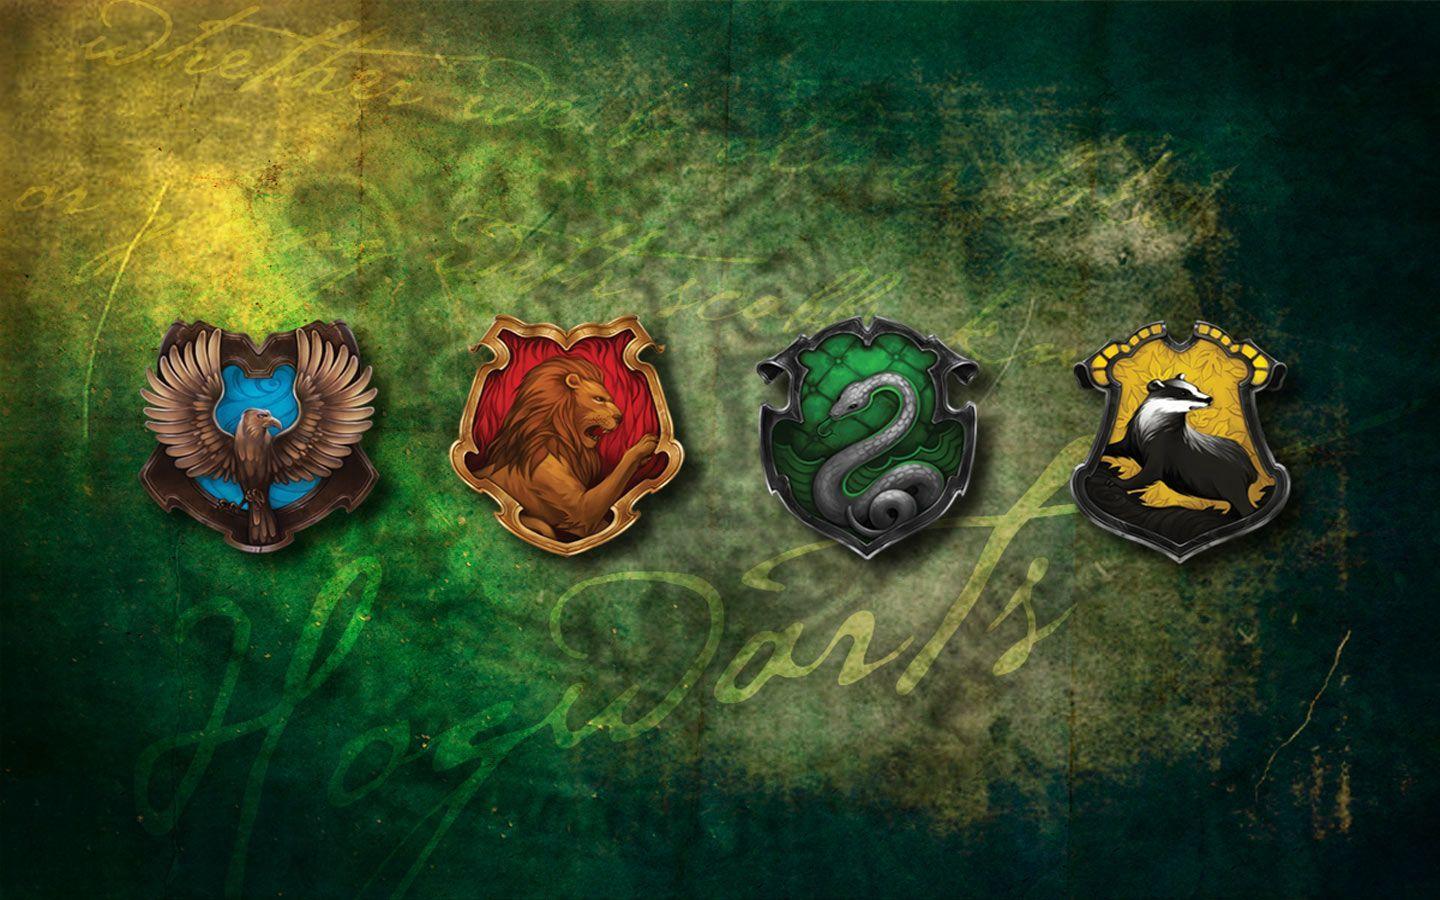 Download Gryffindor Lion Crest Wallpaper | Wallpapers.com